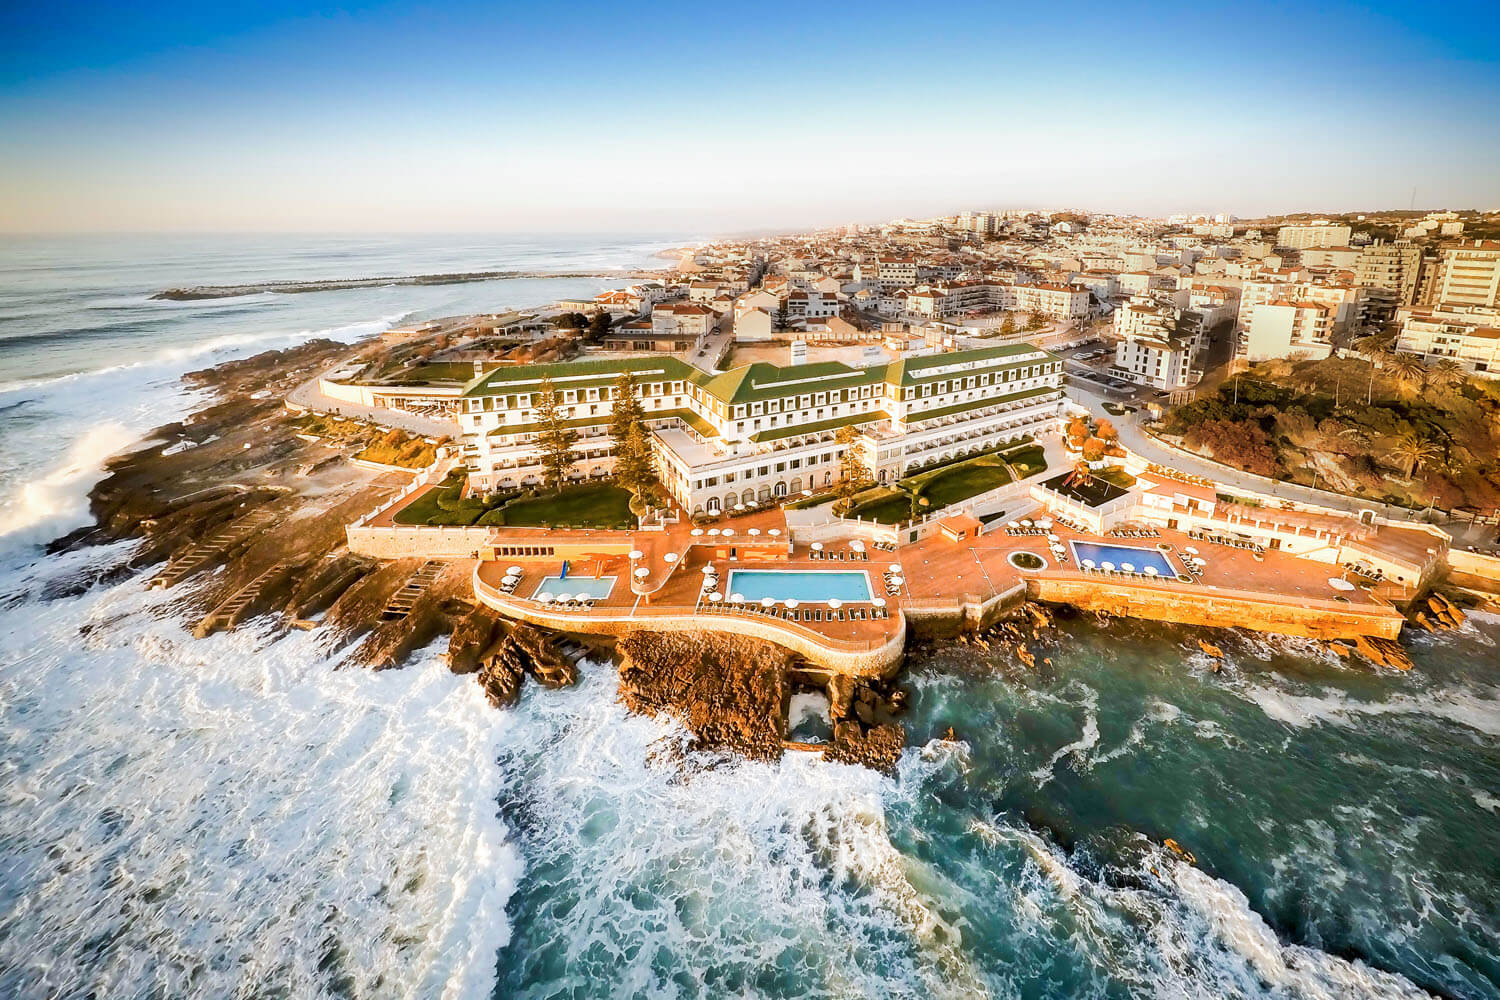 Hotel Vila Galé Ericeira - Aerial View